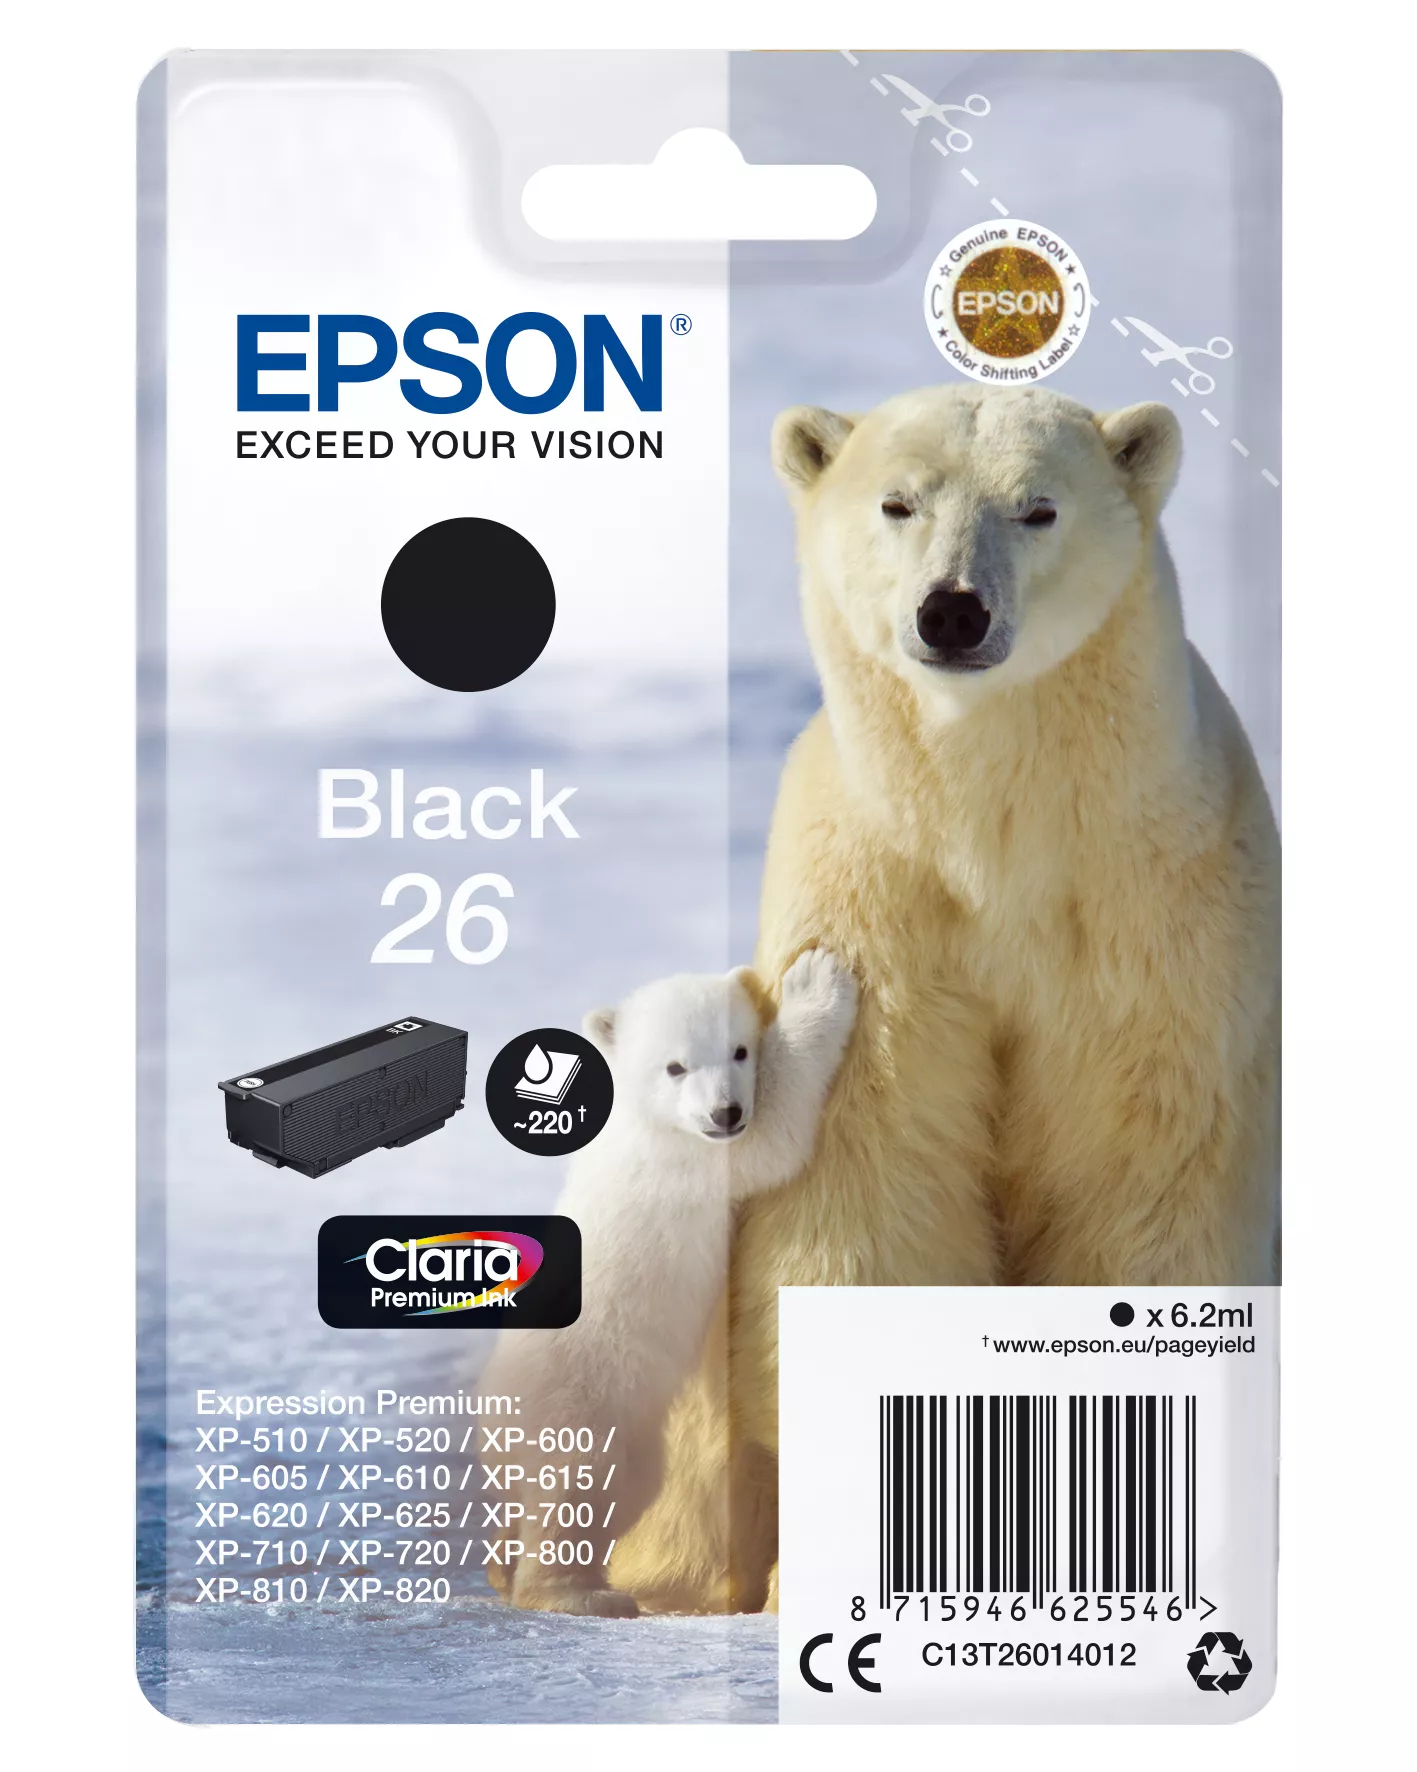 Achat EPSON 26 cartouche dencre noir capacité standard 6.2ml 220 sur hello RSE